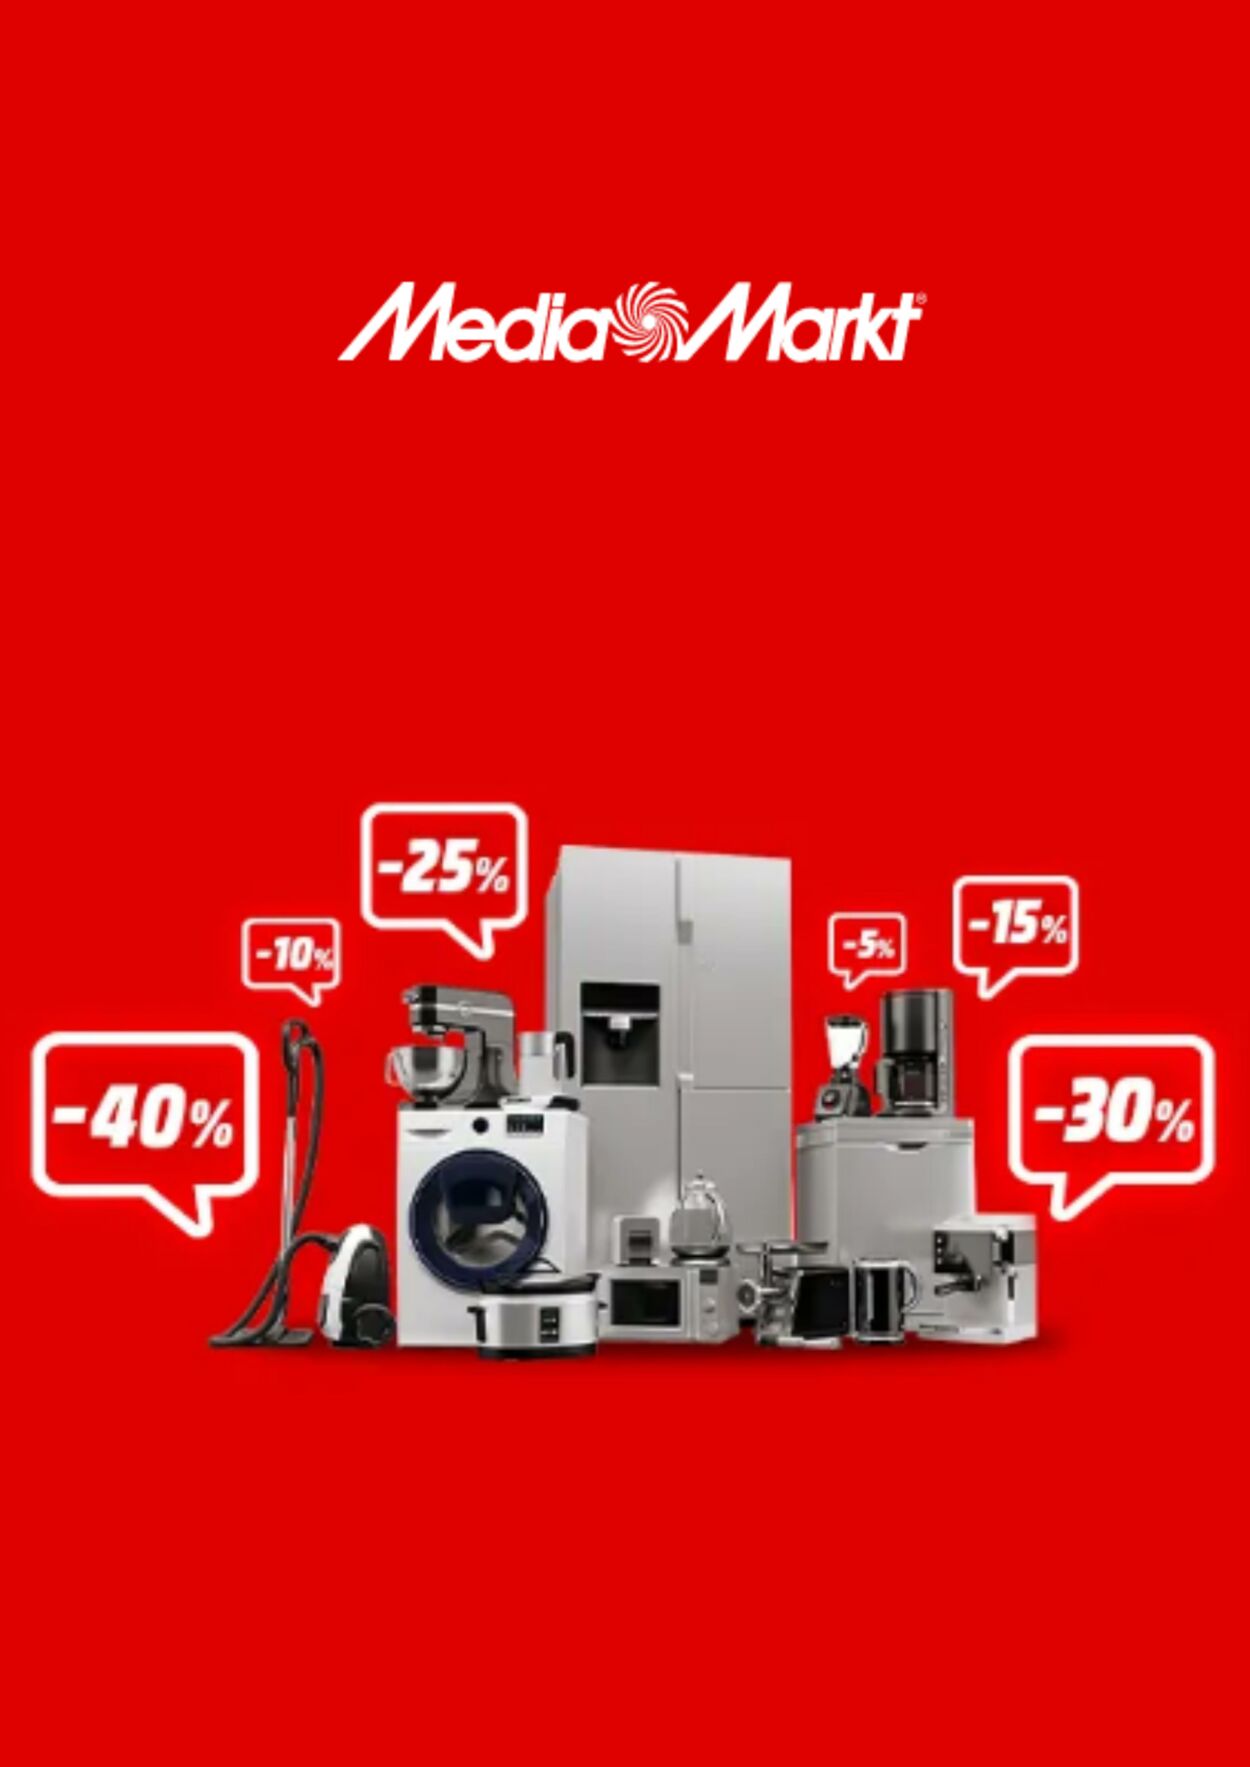 MediaMarkt Folhetos. Promoções e ofertas da semana